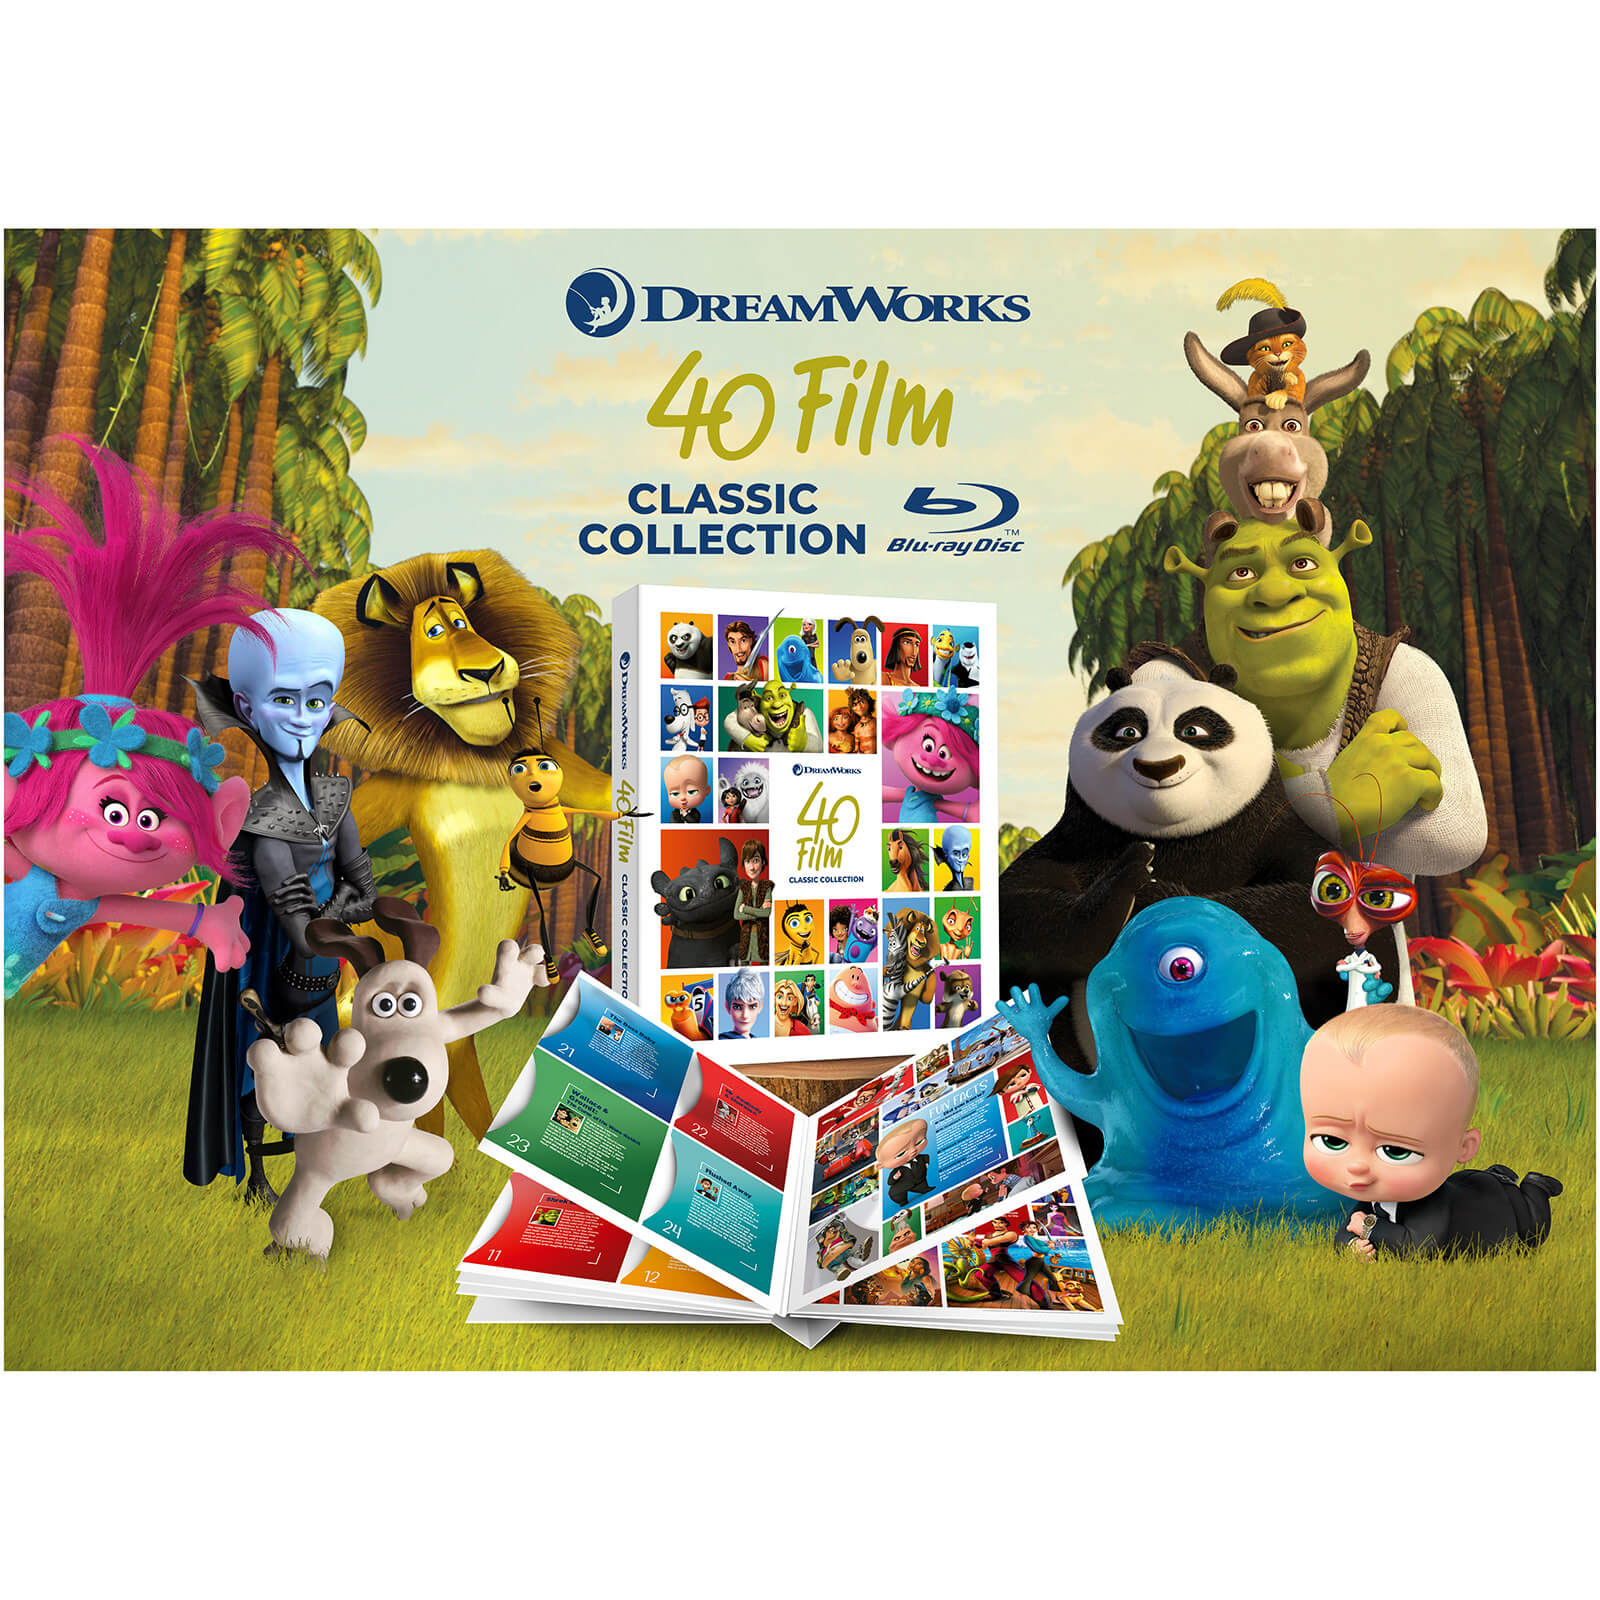 DreamWorks 40 Film Classic Collection von Universal